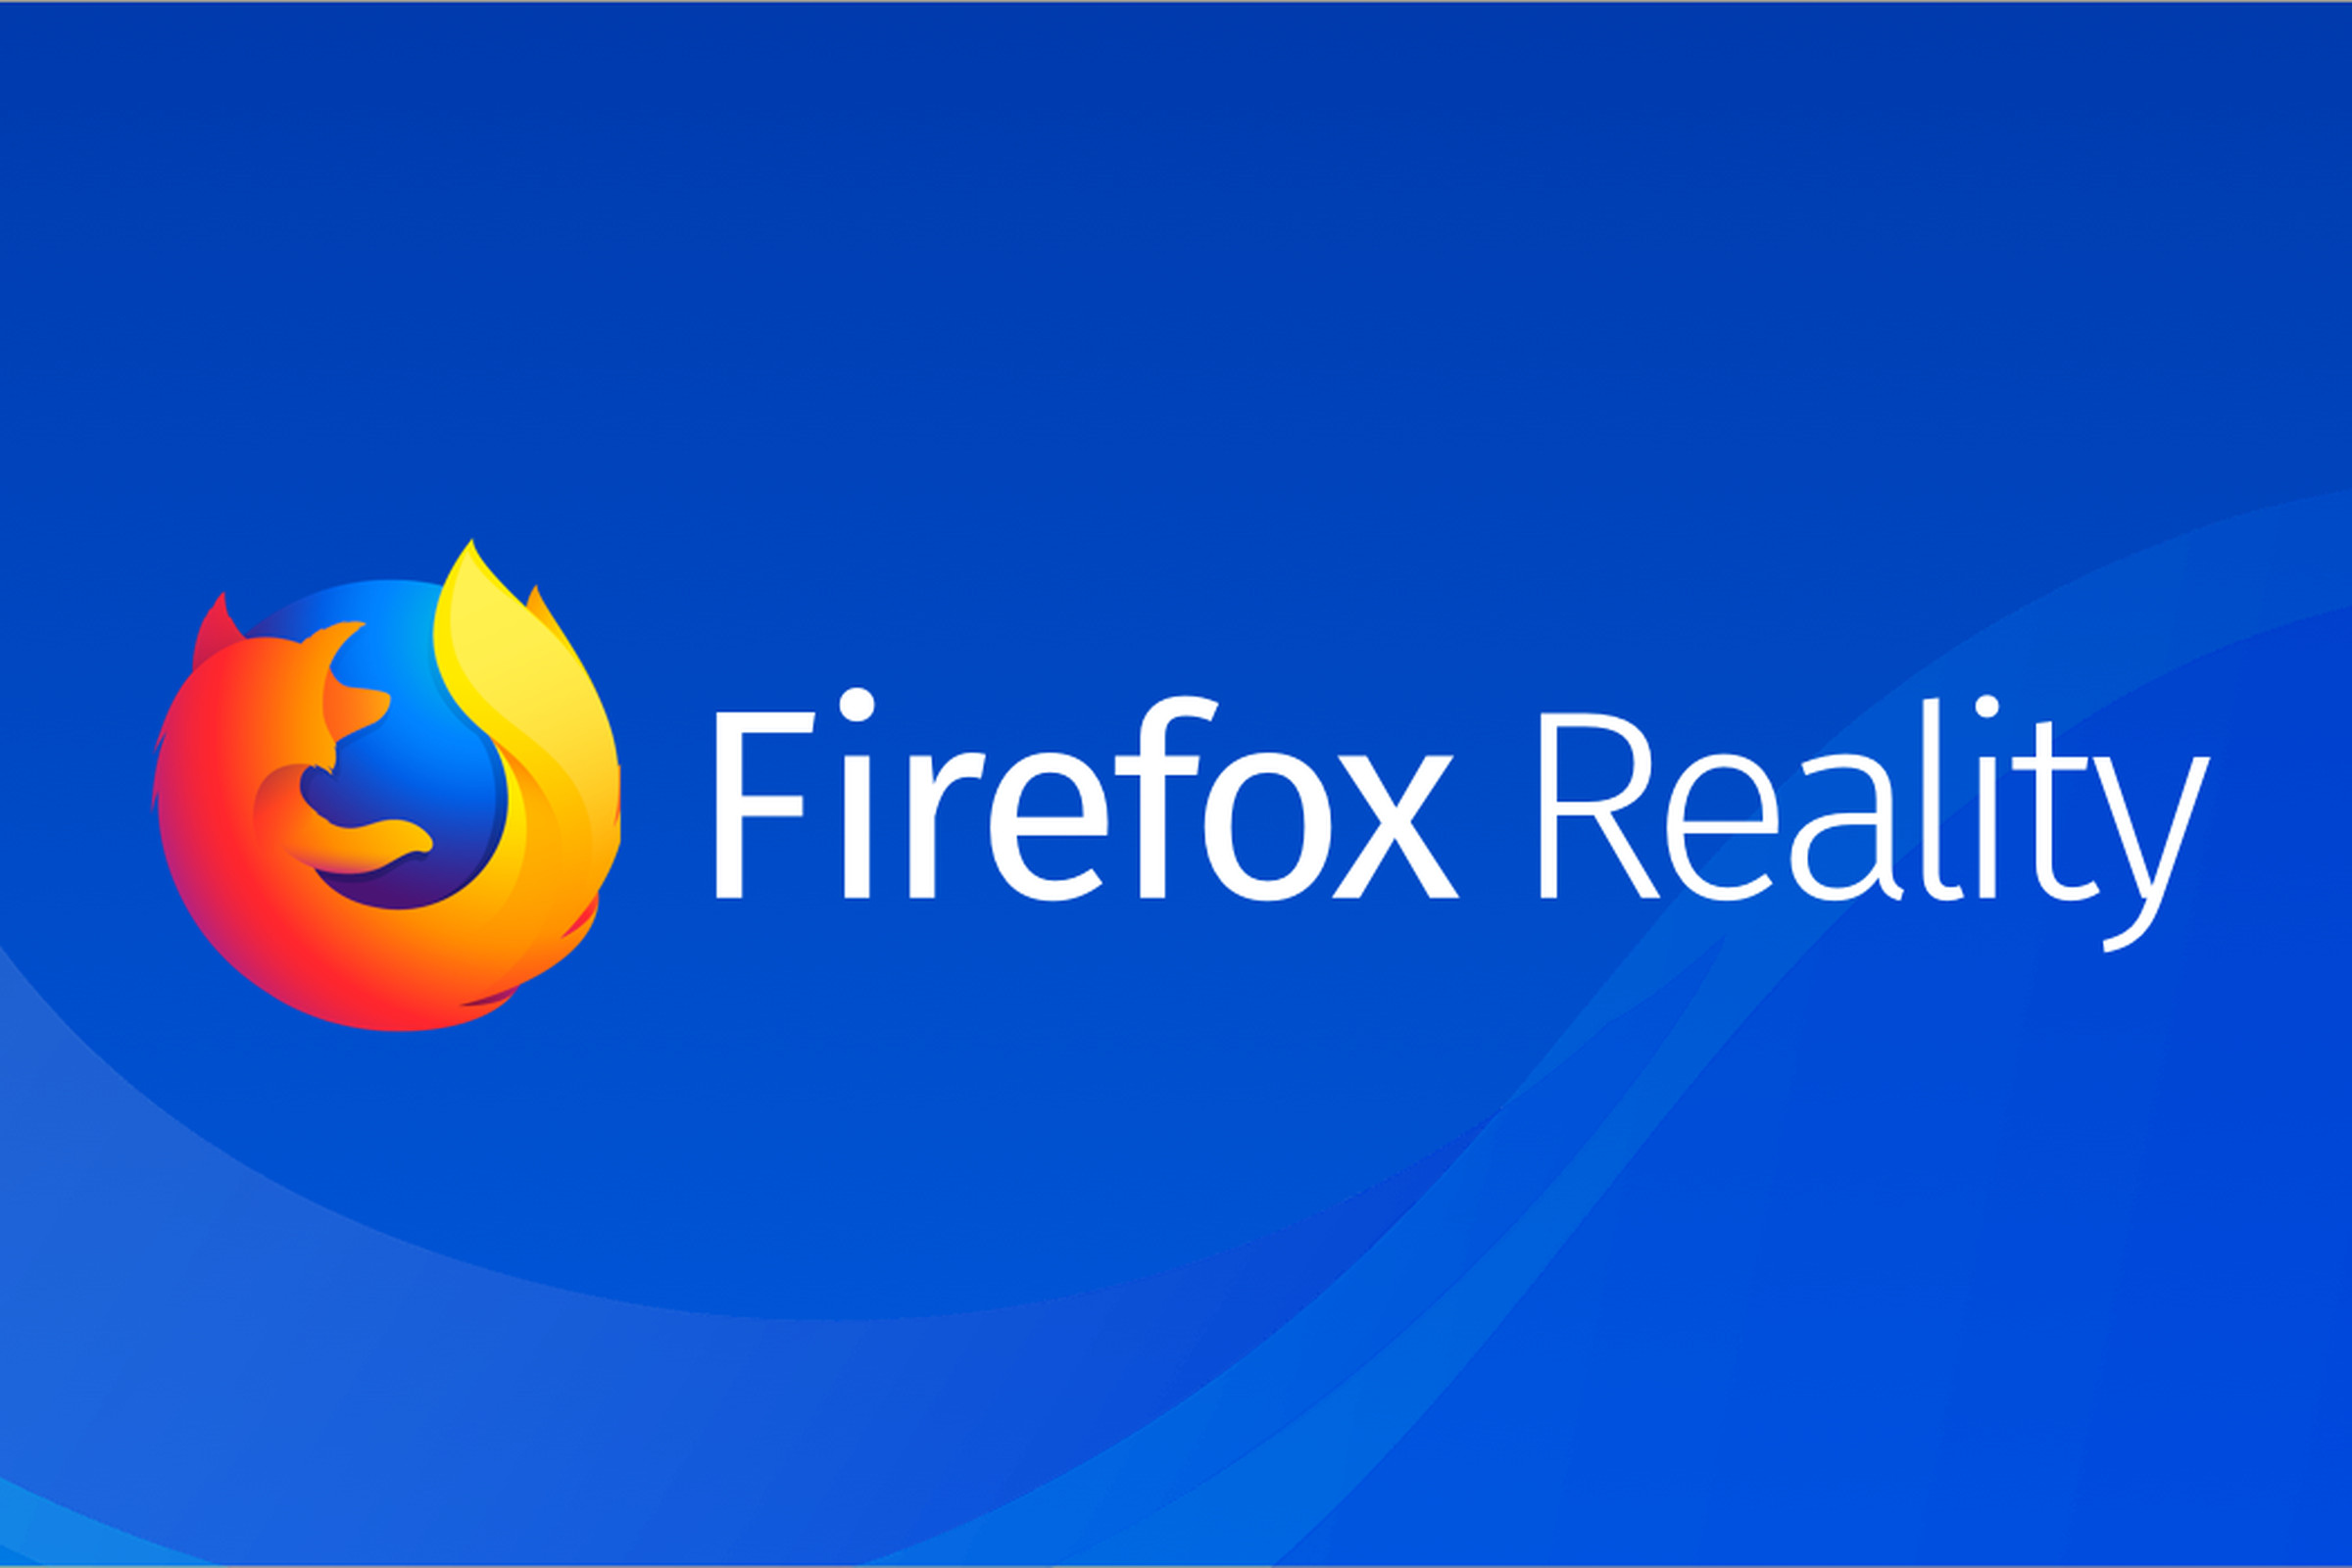 Firefox Reality logo